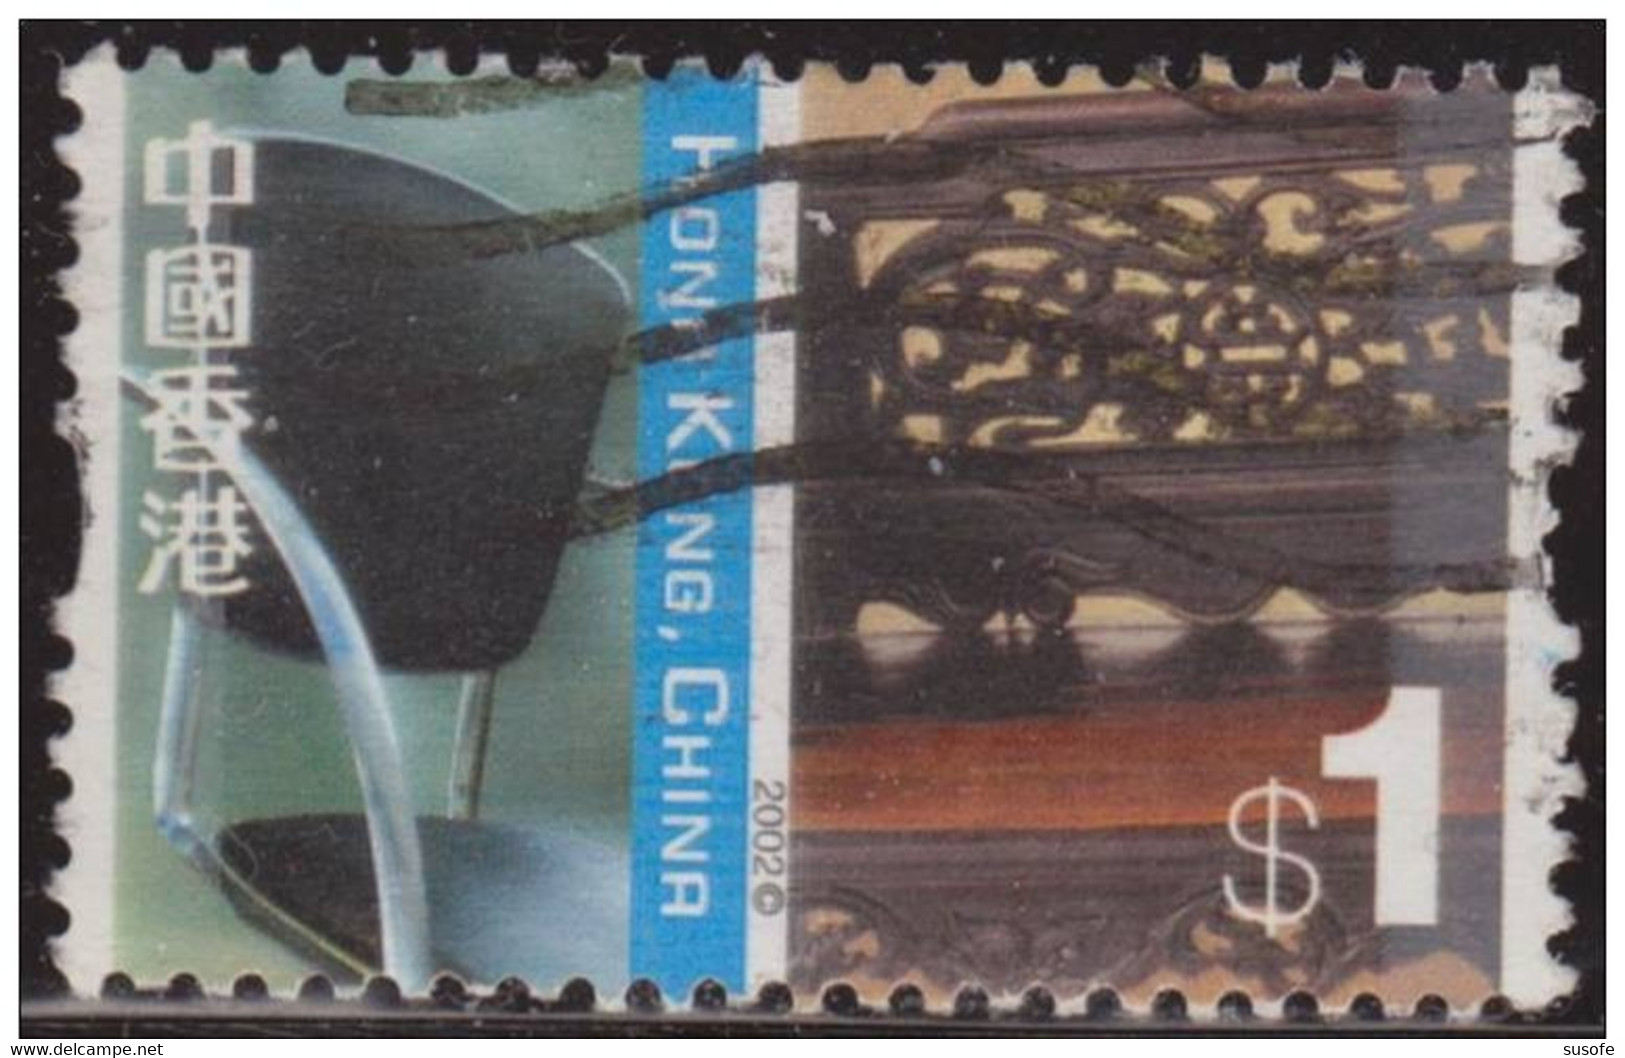 Hong Kong China 2002 Scott 1001 Sello º Cultural Diversity Silla China Y Cama Luohan Michel 1058 Yvert 1030 Stamps - Usati